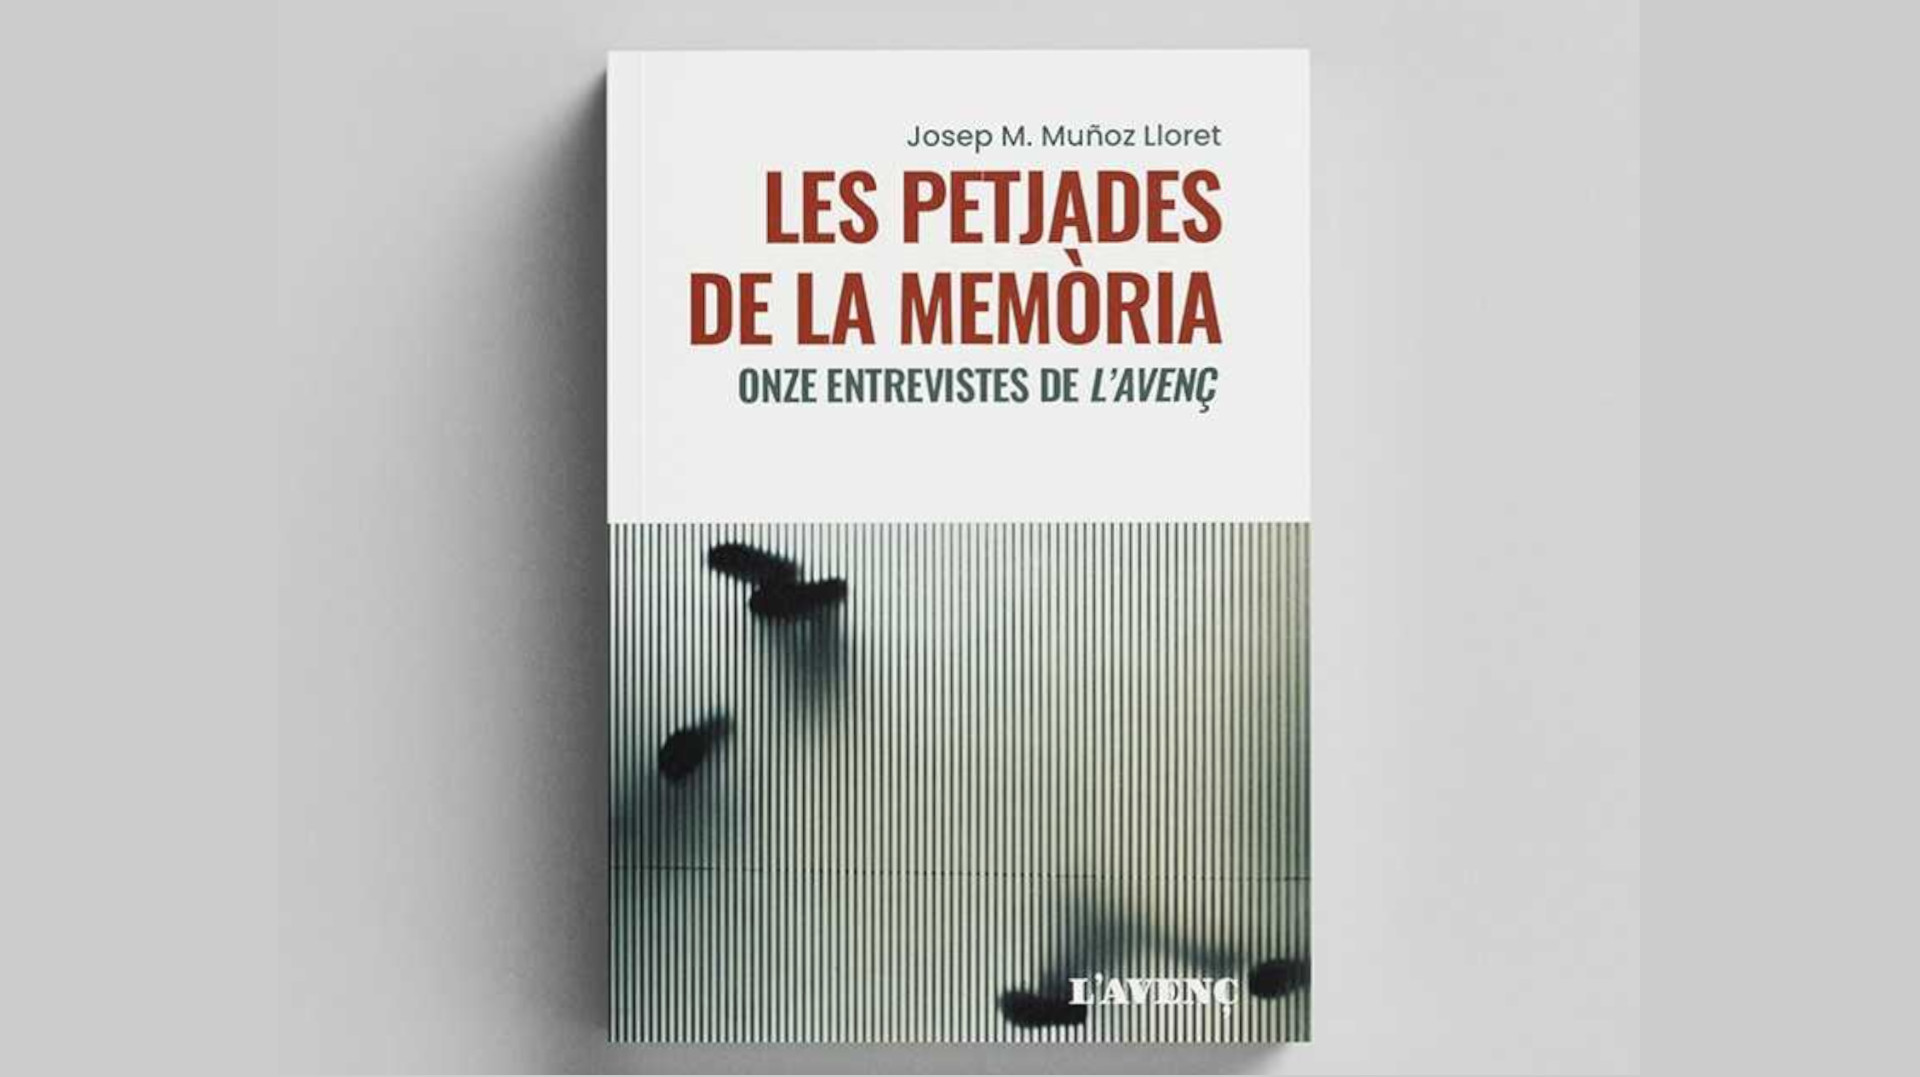 Presentació del llibre ‘Les petjades de la memòria’ de Josep M. Muñoz